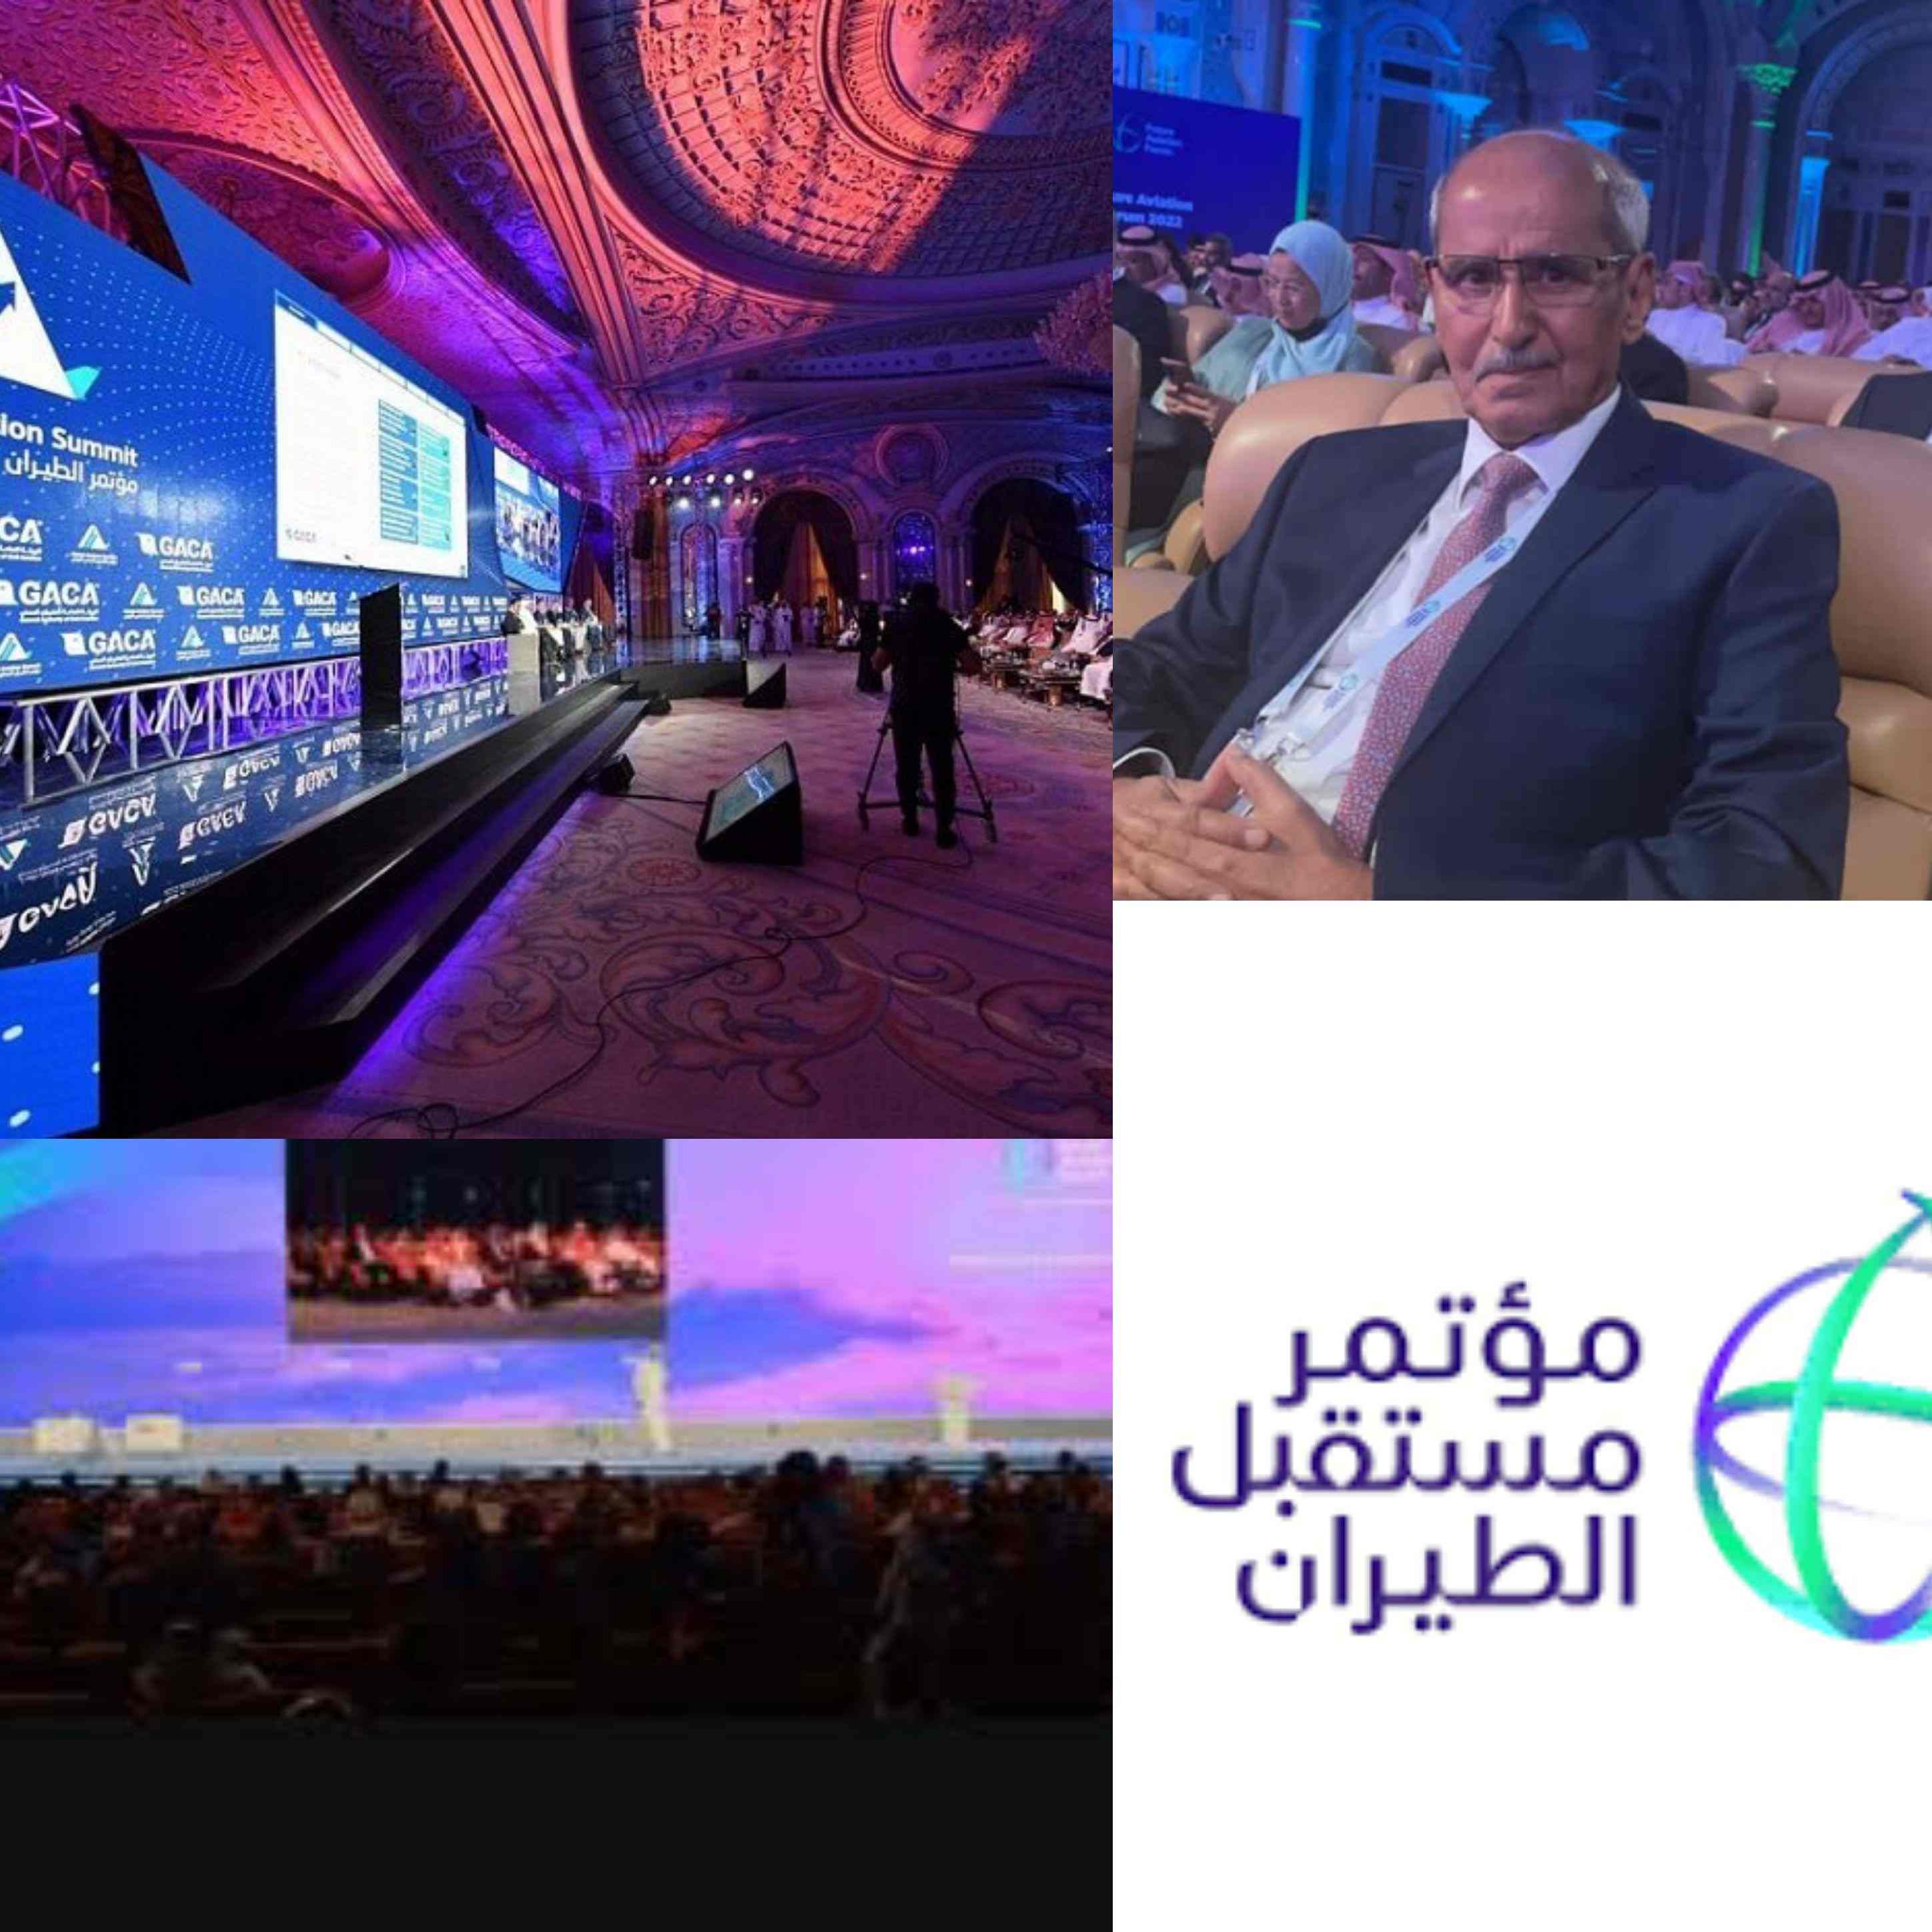 الرياض تختتم مؤتمر مستقبل الطيران بمشاركة 60 دولة وكابتن اليمنية يشيد بدور المملكة في مواكبة التطورات المتسارعة للطيران